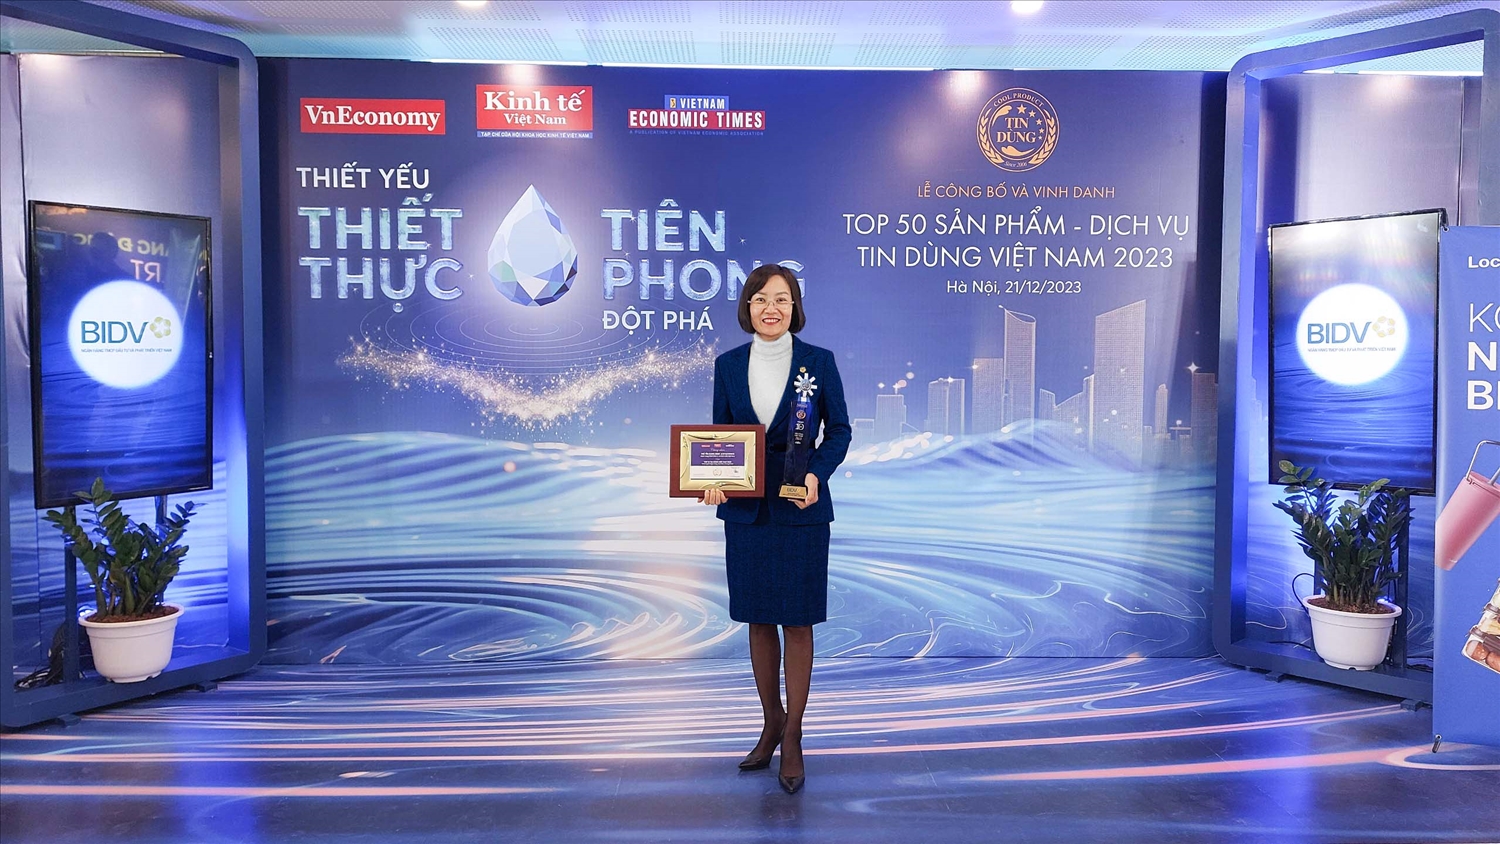 Chị Nguyễn Thị Lệ Thủy – Phó Giám đốc Trung tâm Thẻ và Vận hành BIDV nhận kỷ niệm chương của Ban Tổ chức